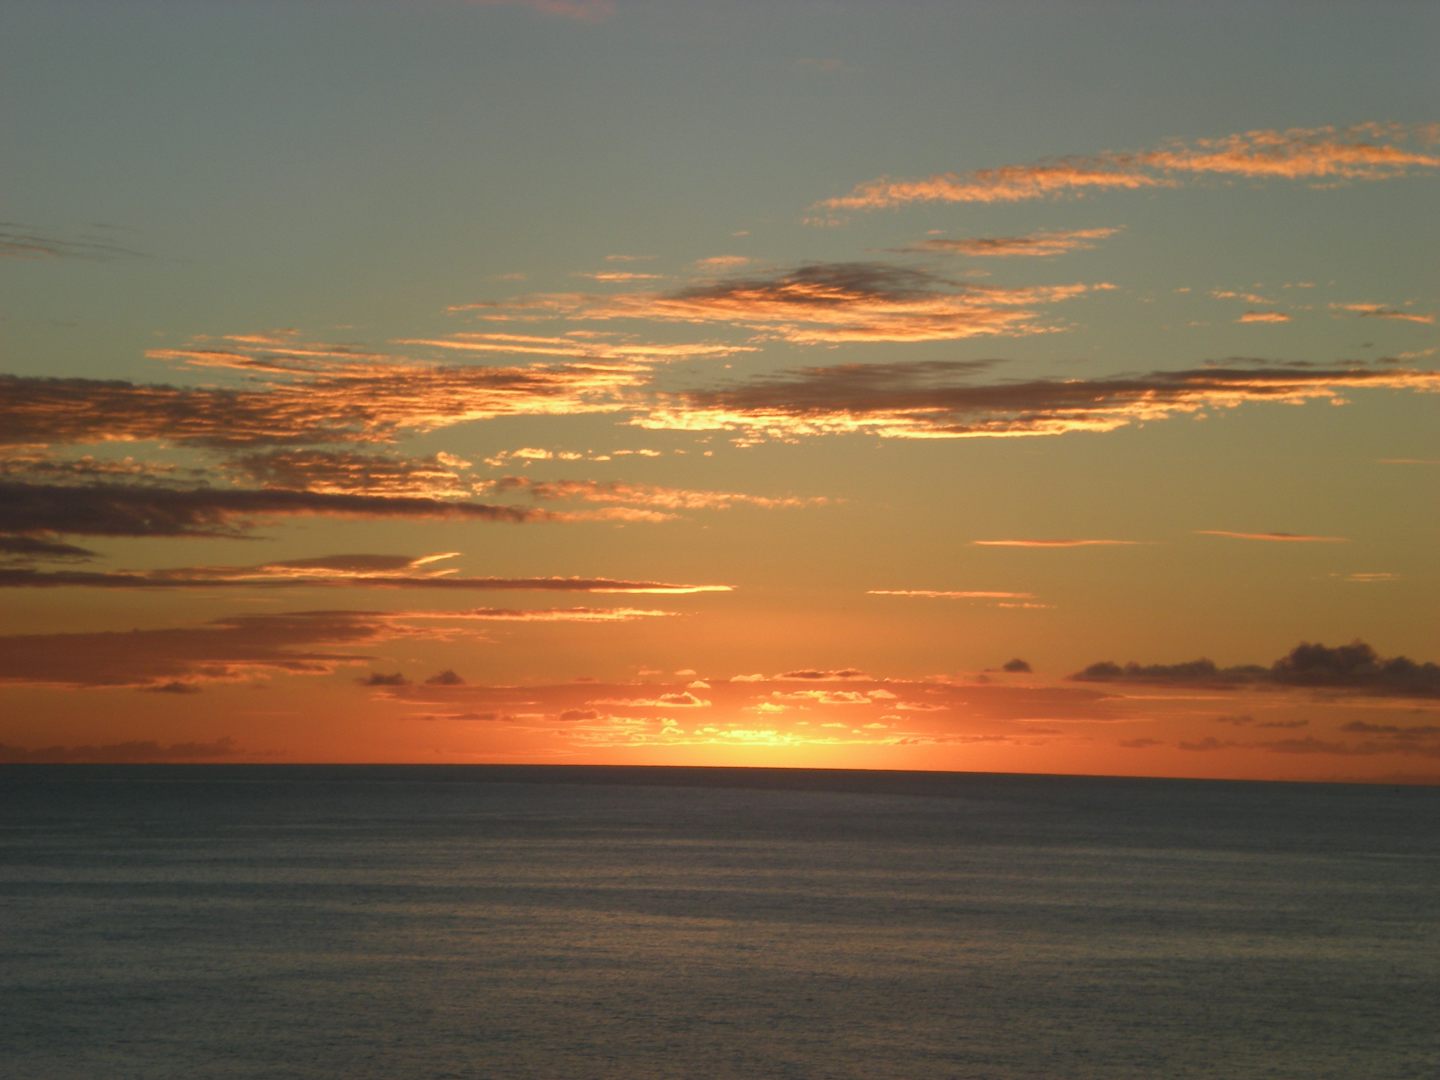 Sunset sailing out of San Juan, P.R.